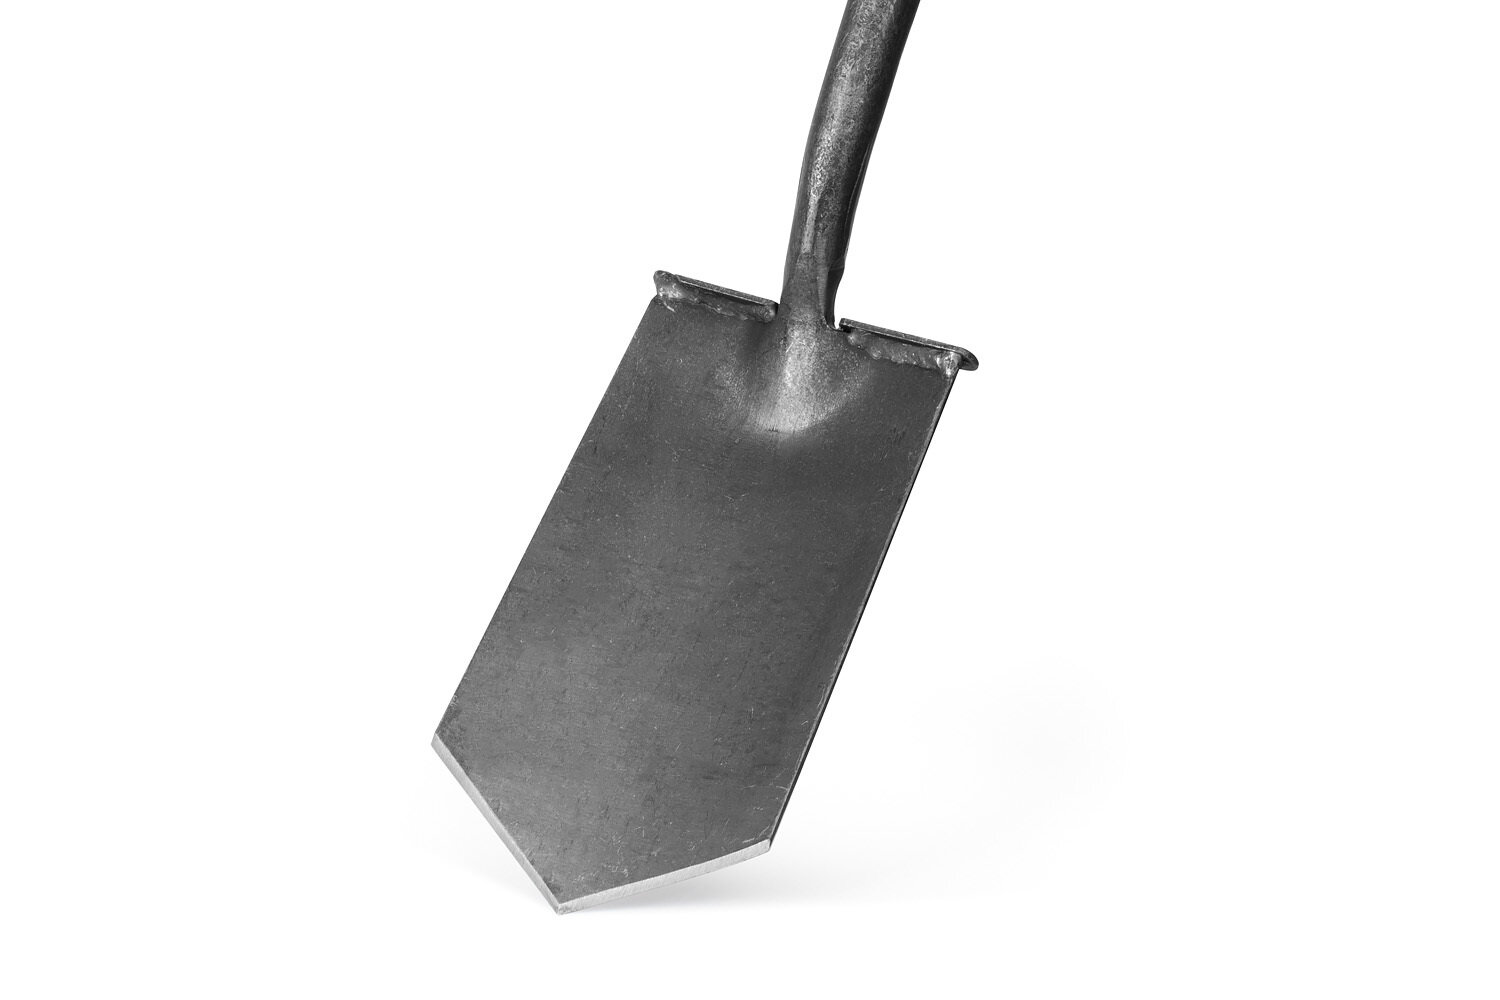 Английская дренажная лопата "Бульдог" DeWit с заостренным полотном с площадкой для ноги